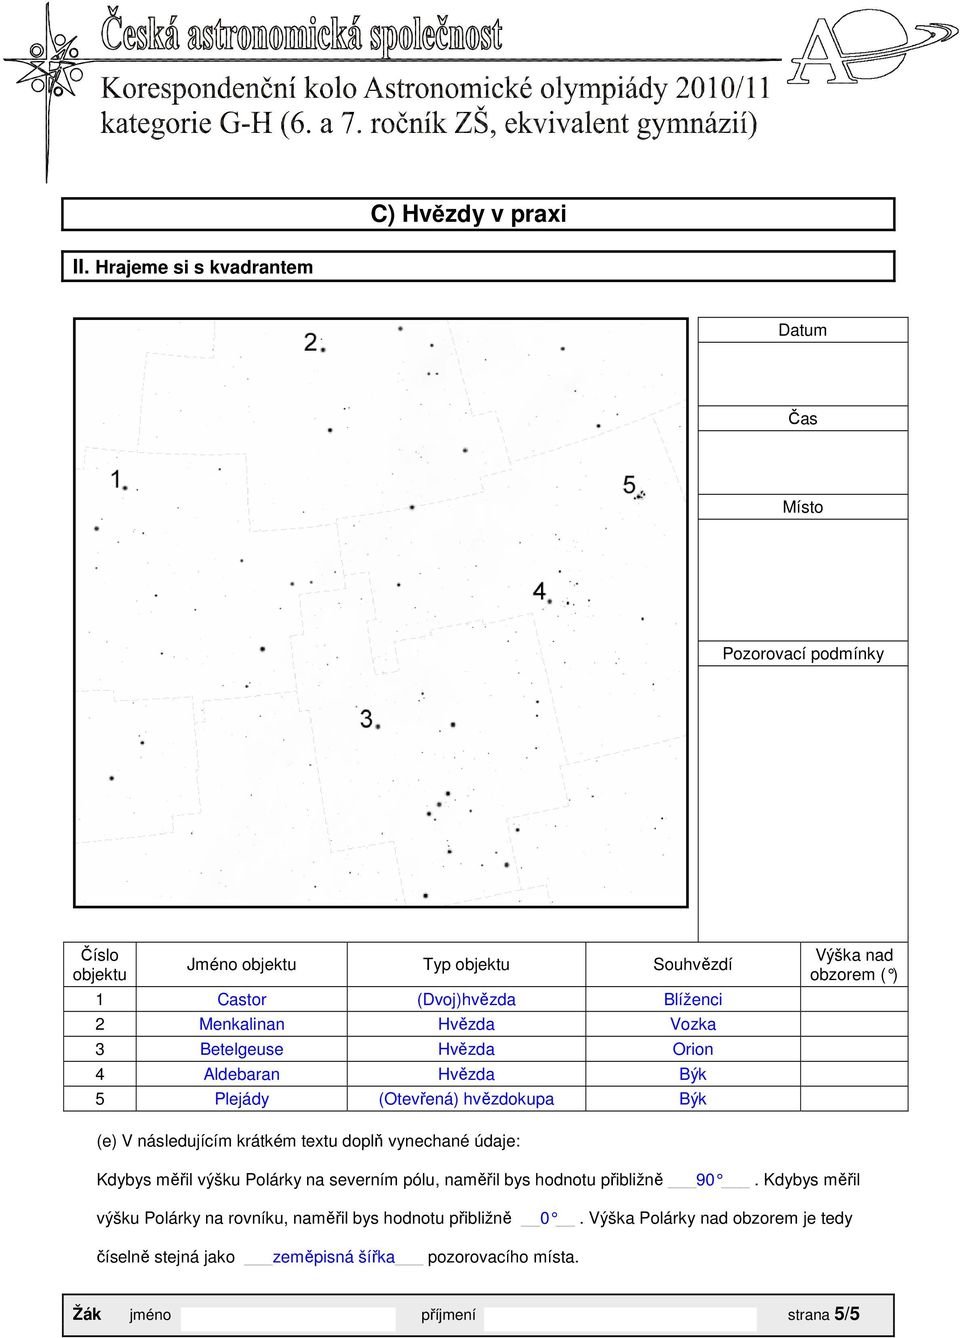 Hvězda Vozka 3 Betelgeuse Hvězda Orion 4 Aldebaran Hvězda Býk 5 Plejády (Otevřená) hvězdokupa Býk Výška nad obzorem ( ) (e) V následujícím krátkém textu